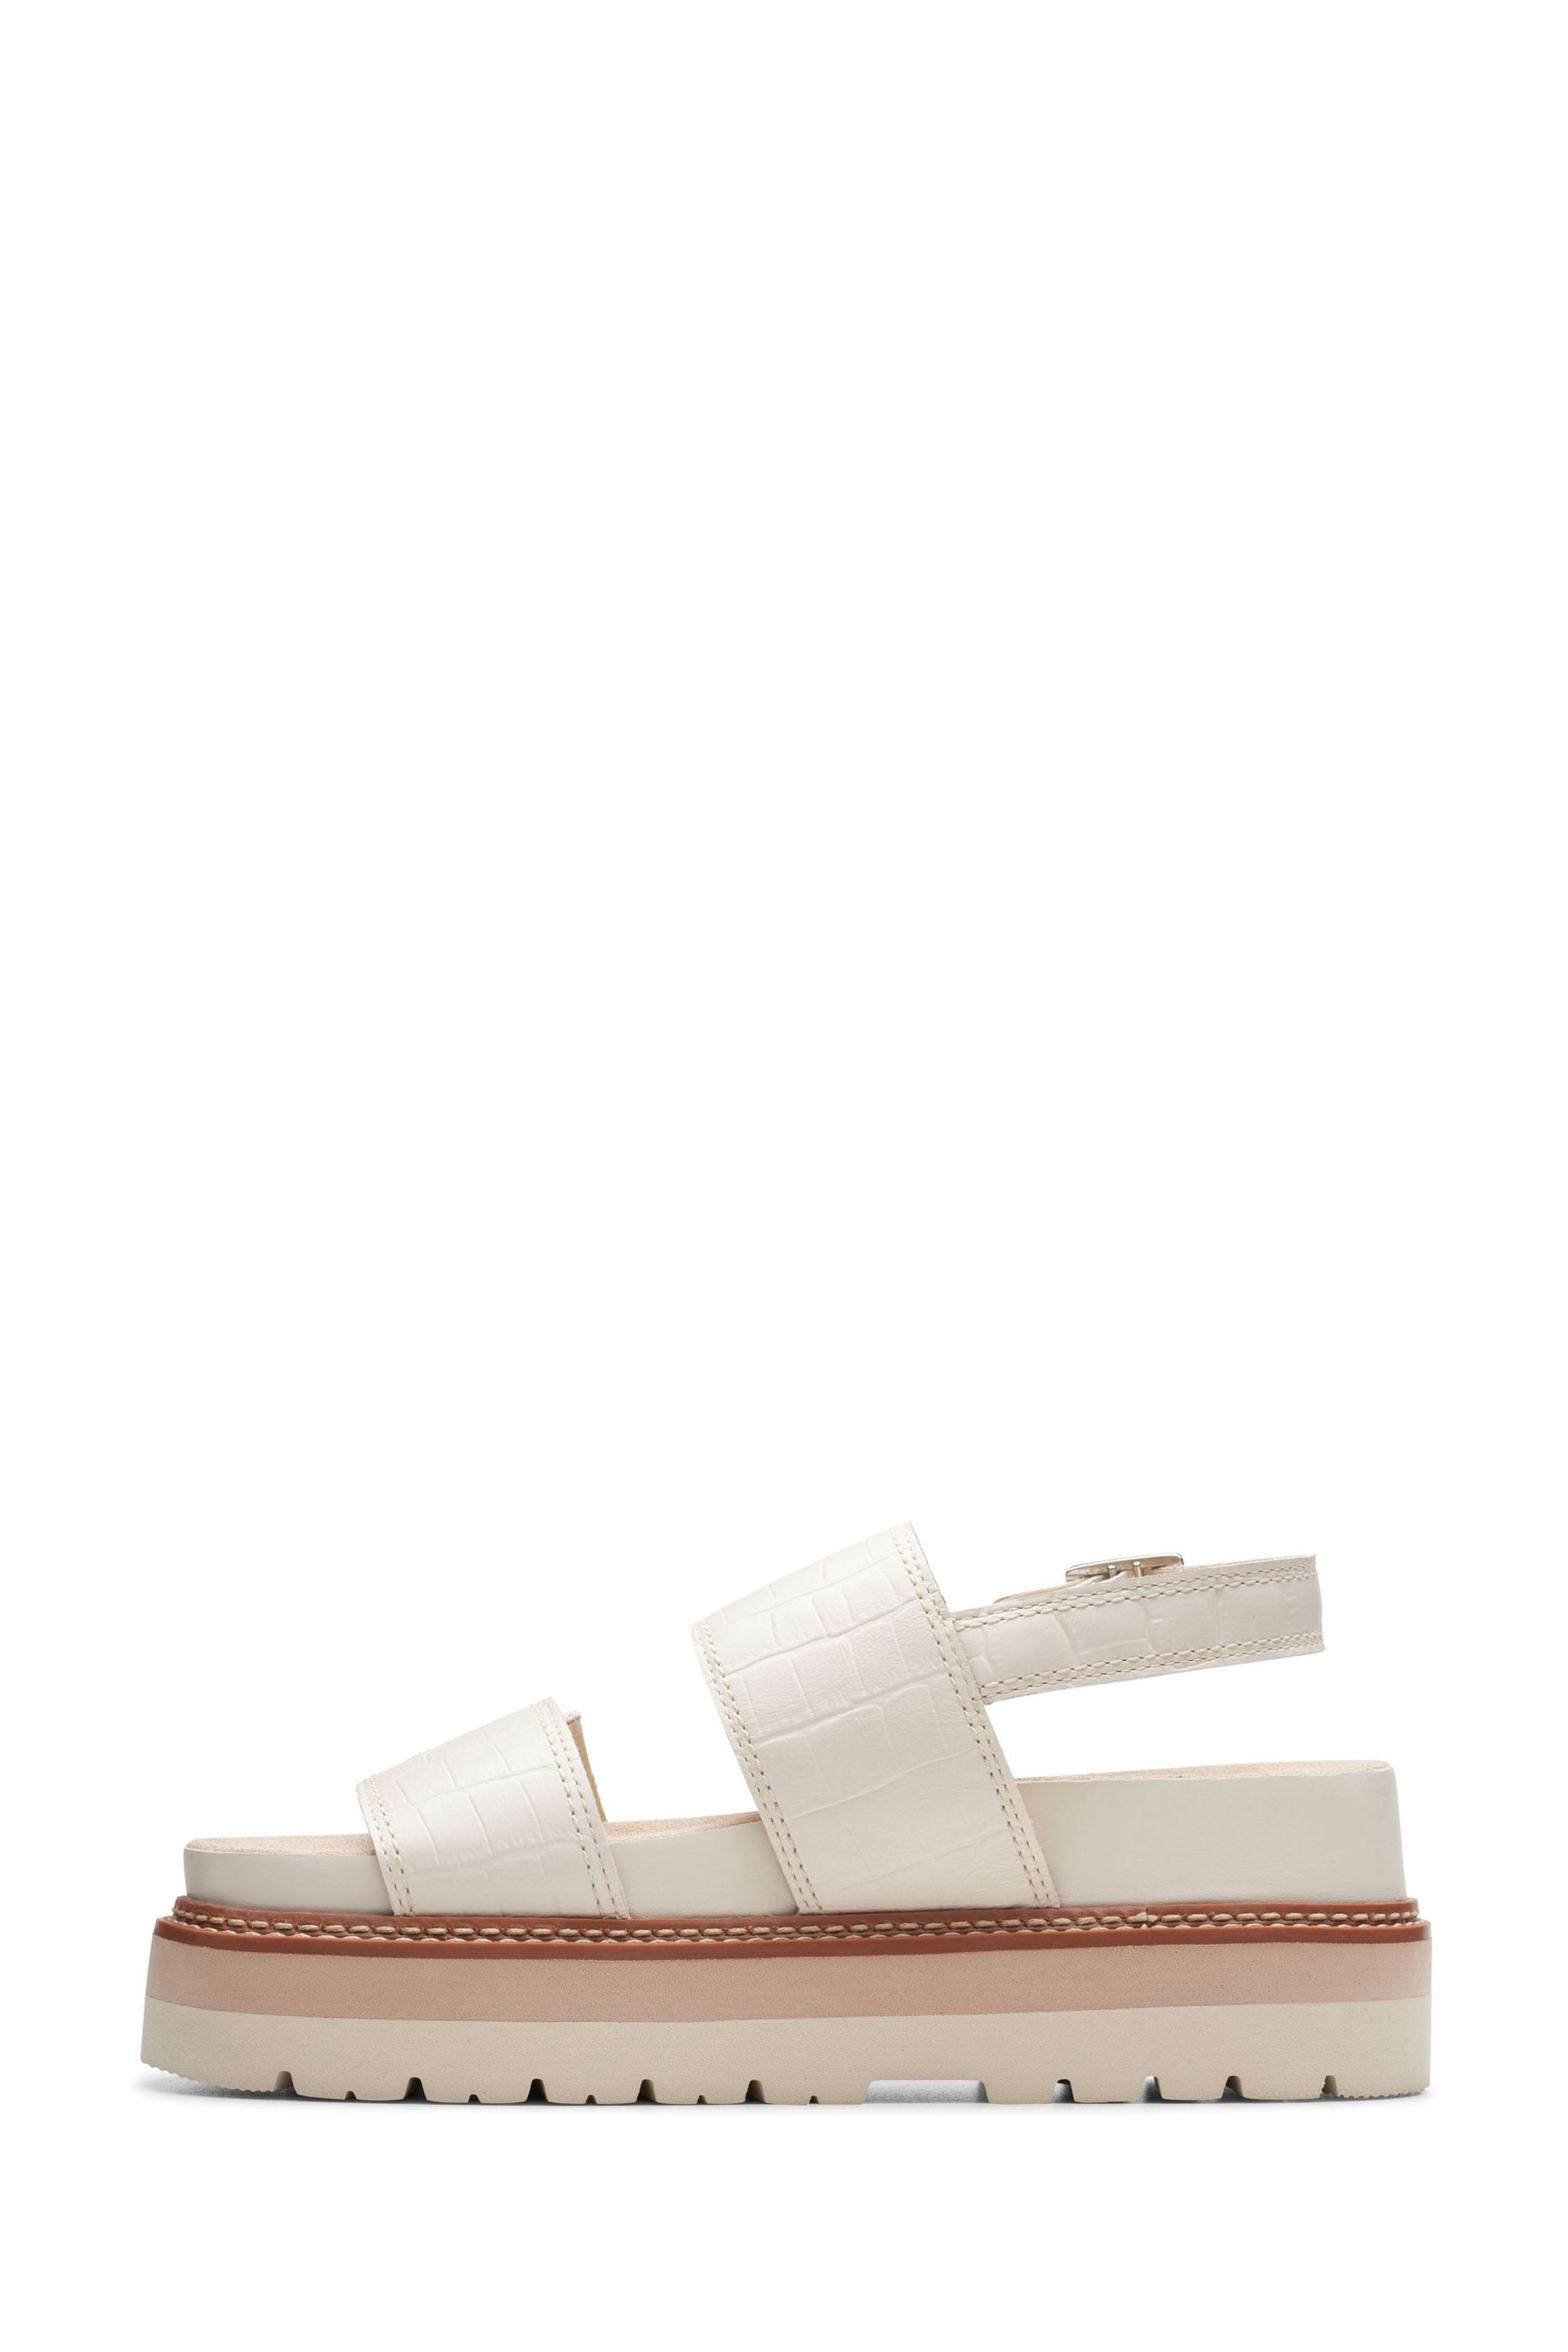 Clarks Cream Interest Orianna Glide Sandals - Image 6 of 7